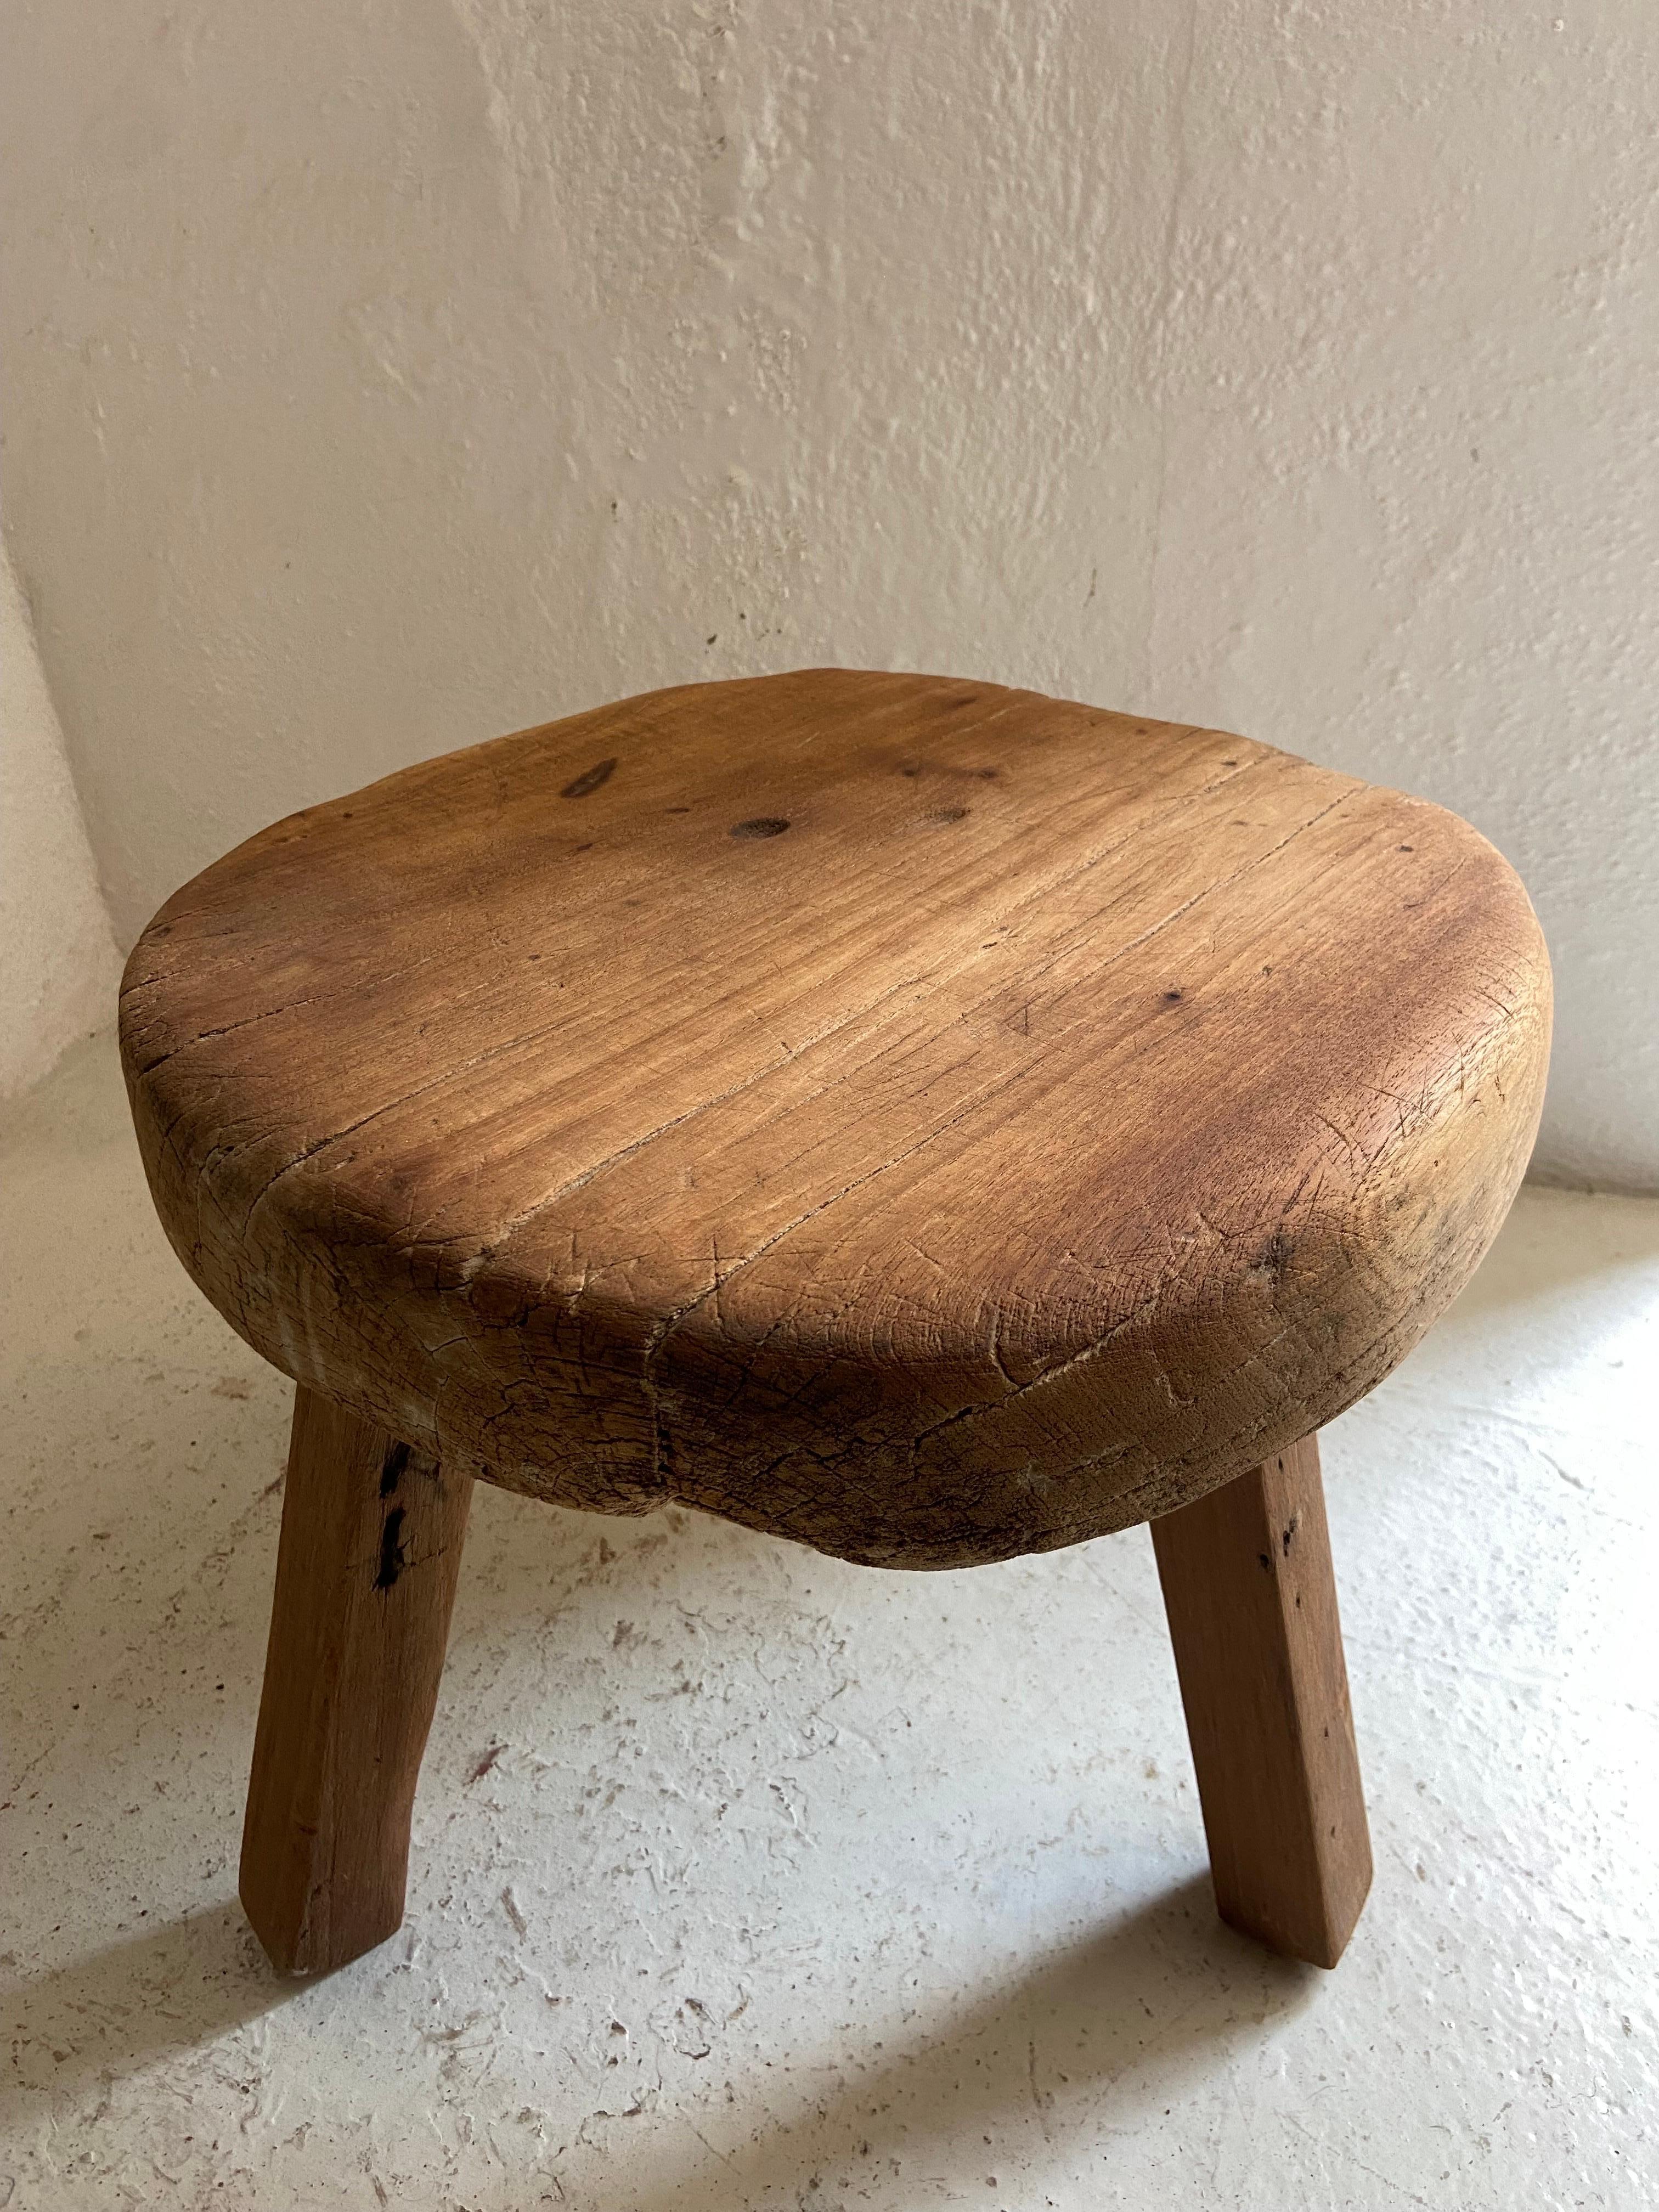 Runder Tisch im primitiven Stil aus Yucatan, Mexiko, ca. 1980er Jahre. Die Beine sind nicht original. Sie werden aus wiederverwendeten Balken hergestellt. Die Tischplatte ist unregelmäßig und hat einen starken Charakter.